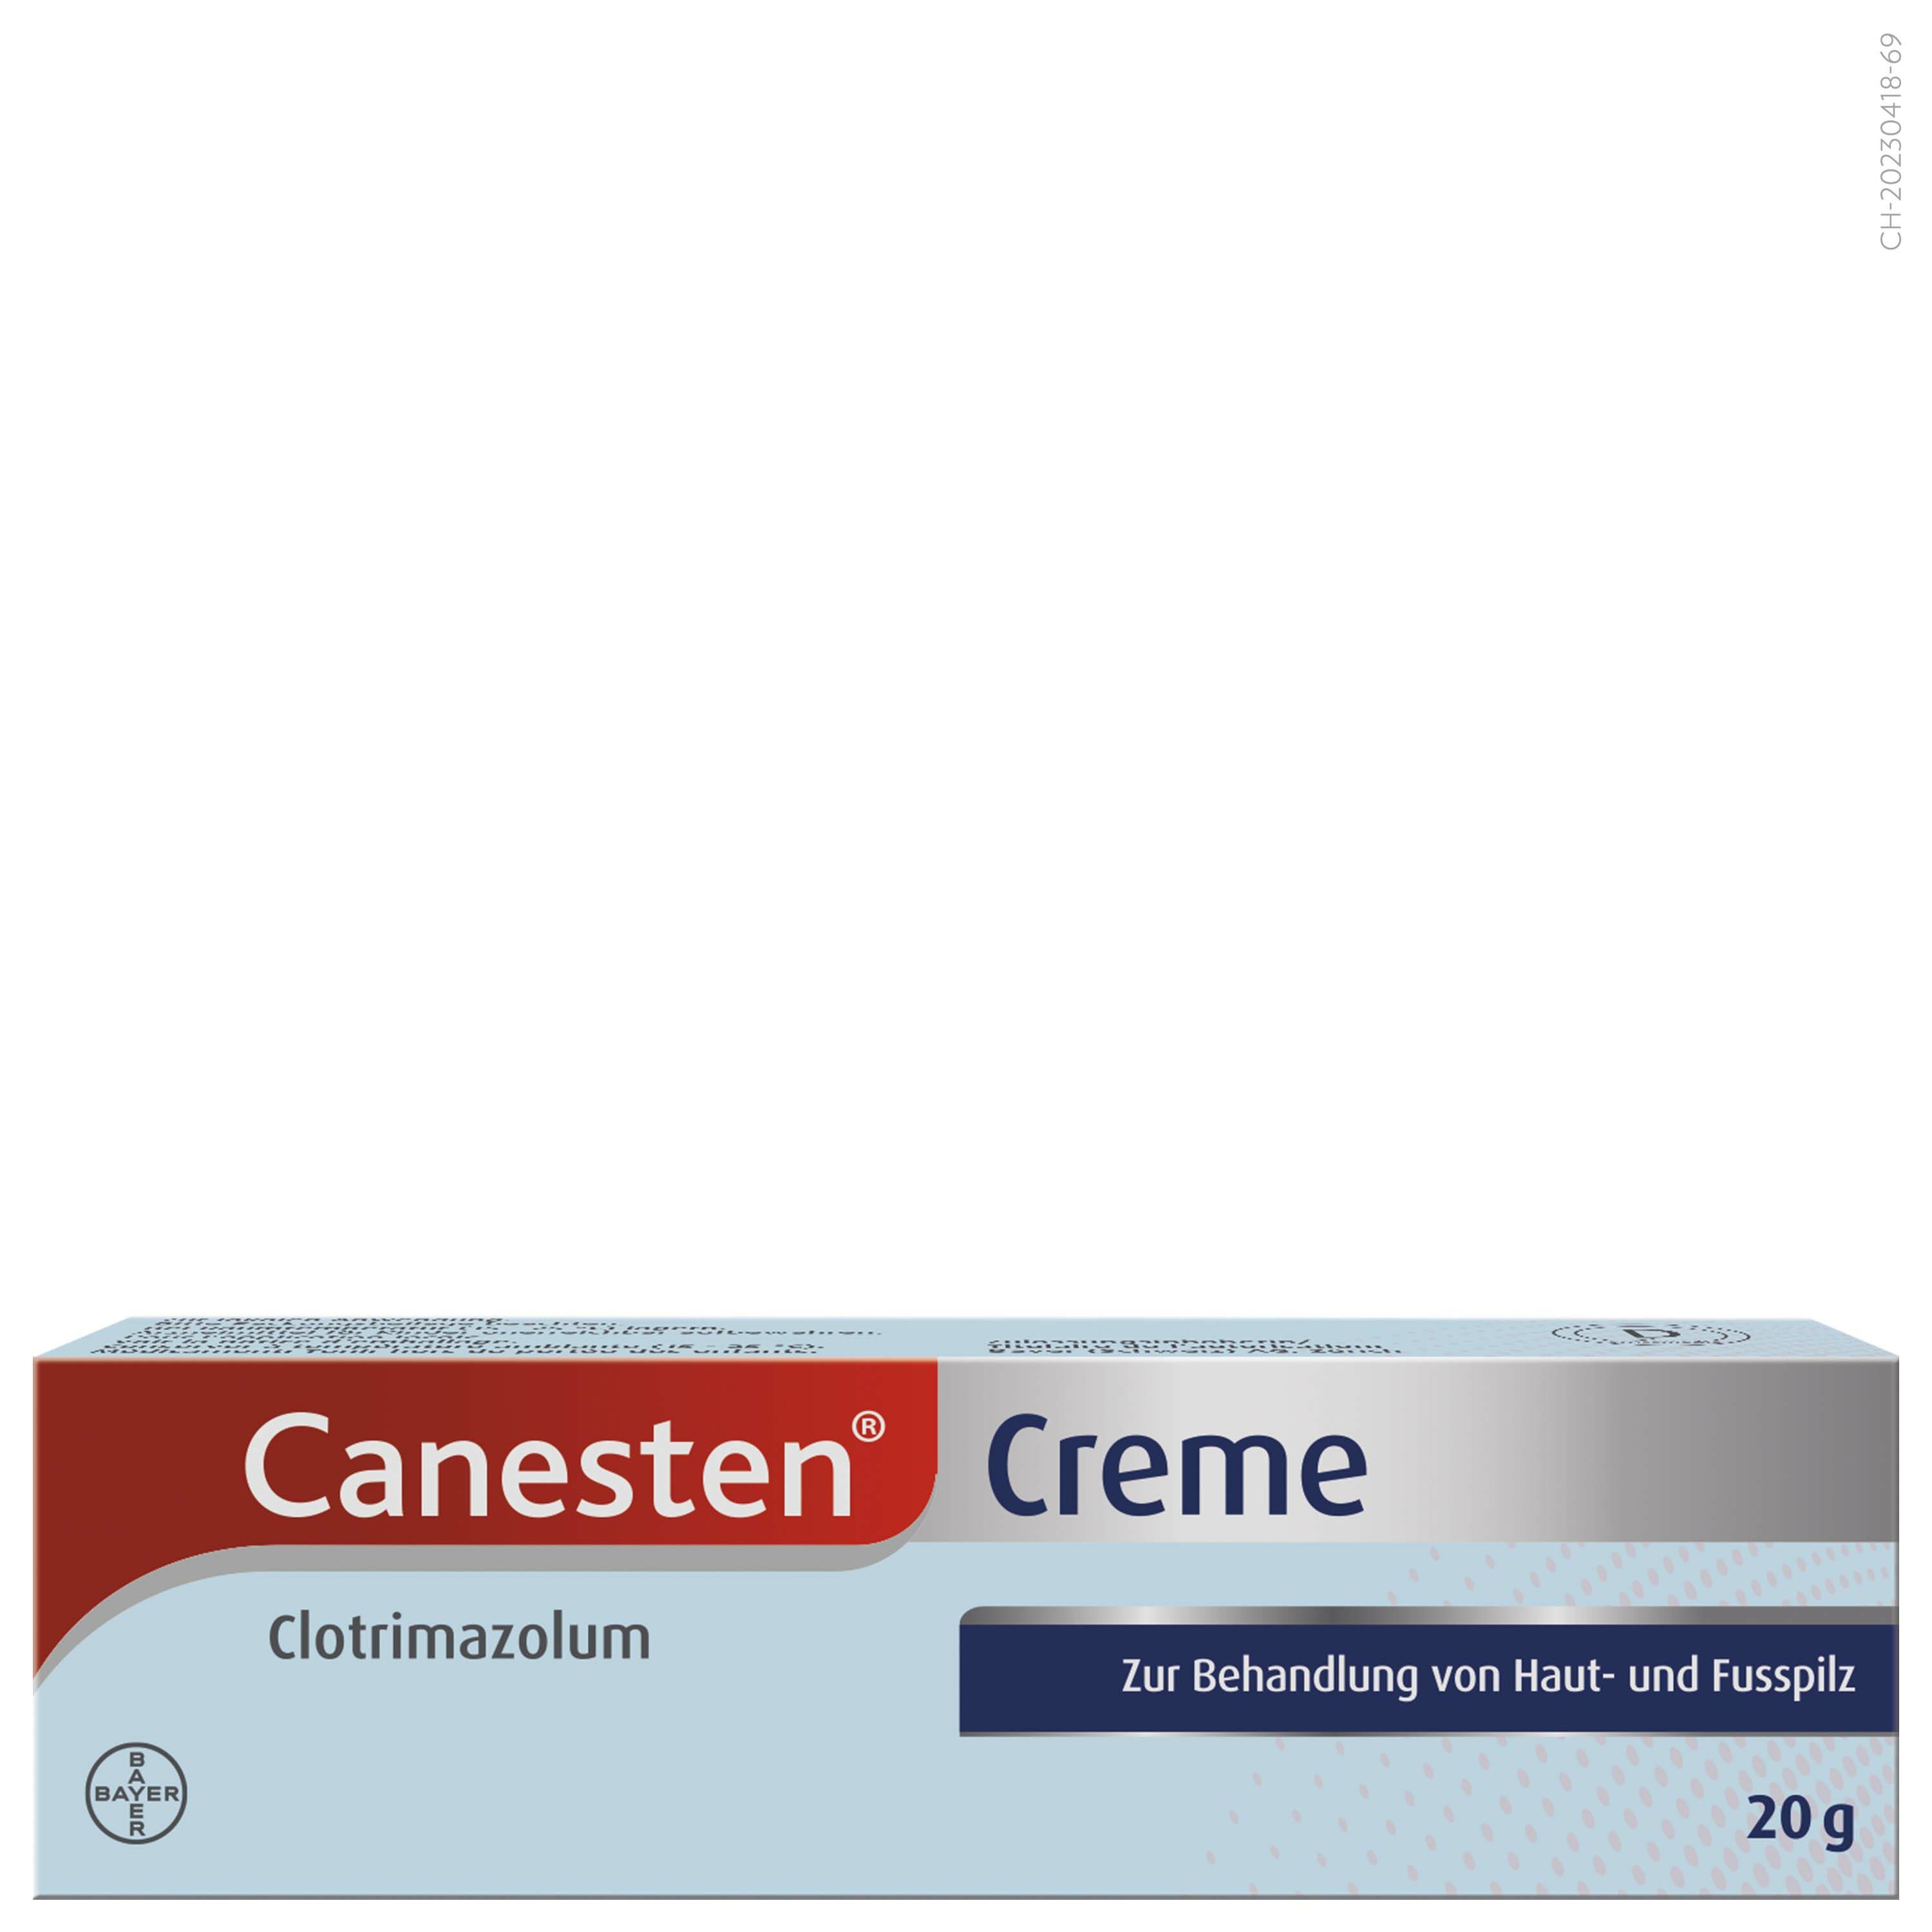 Canesten Creme 10 mg/g Tb 20 g jetzt bestellen